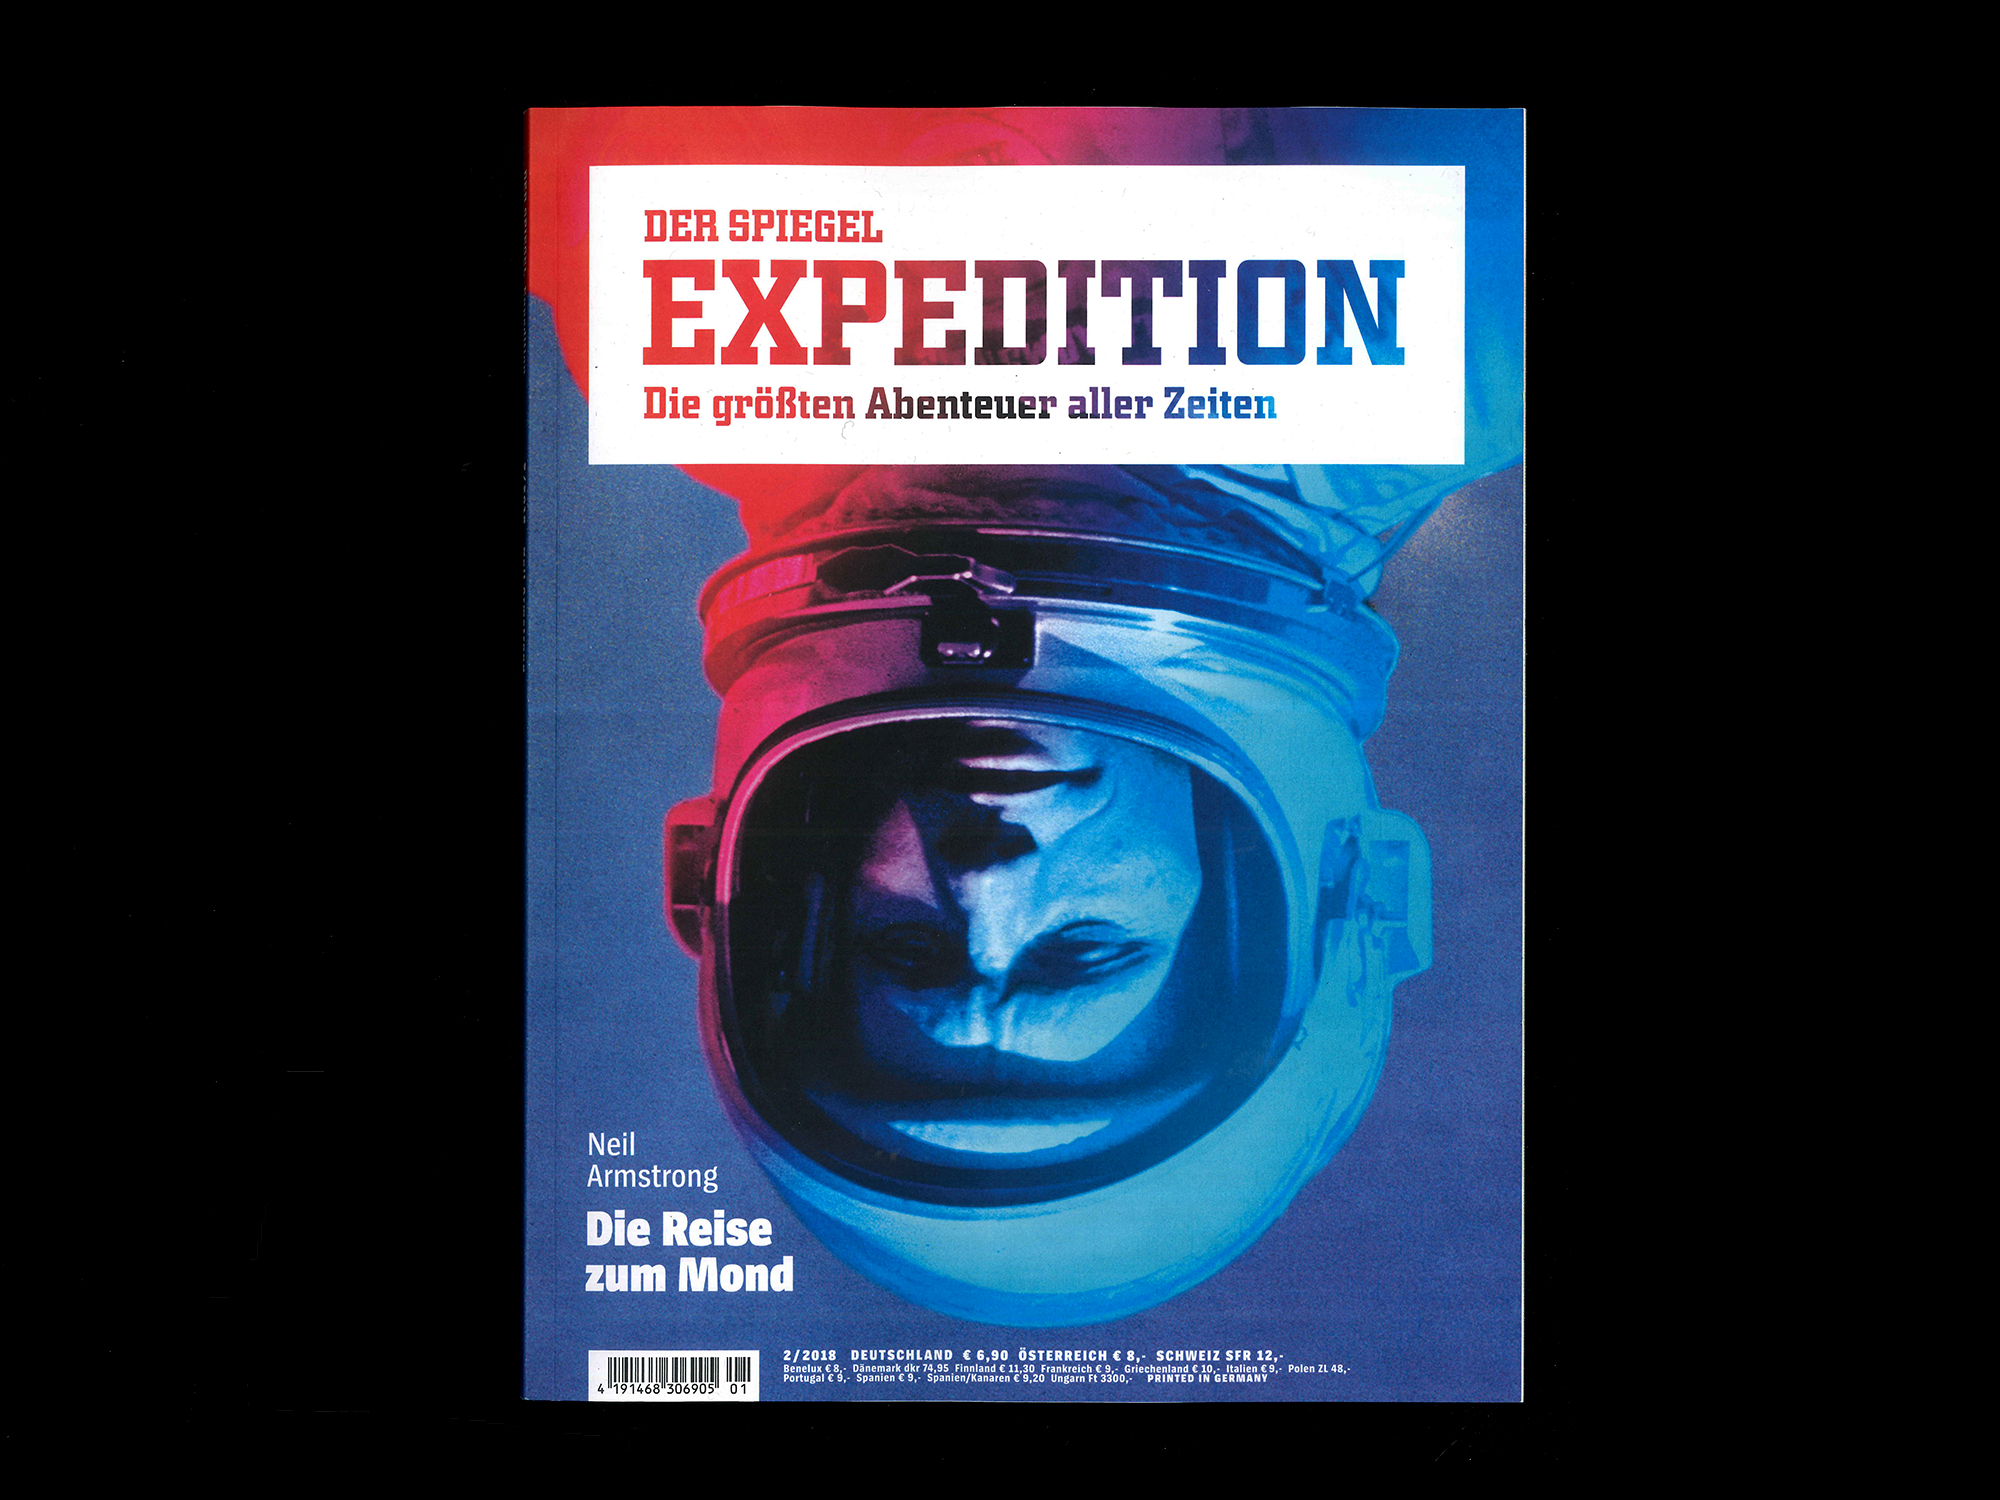 Spiegel Expedition